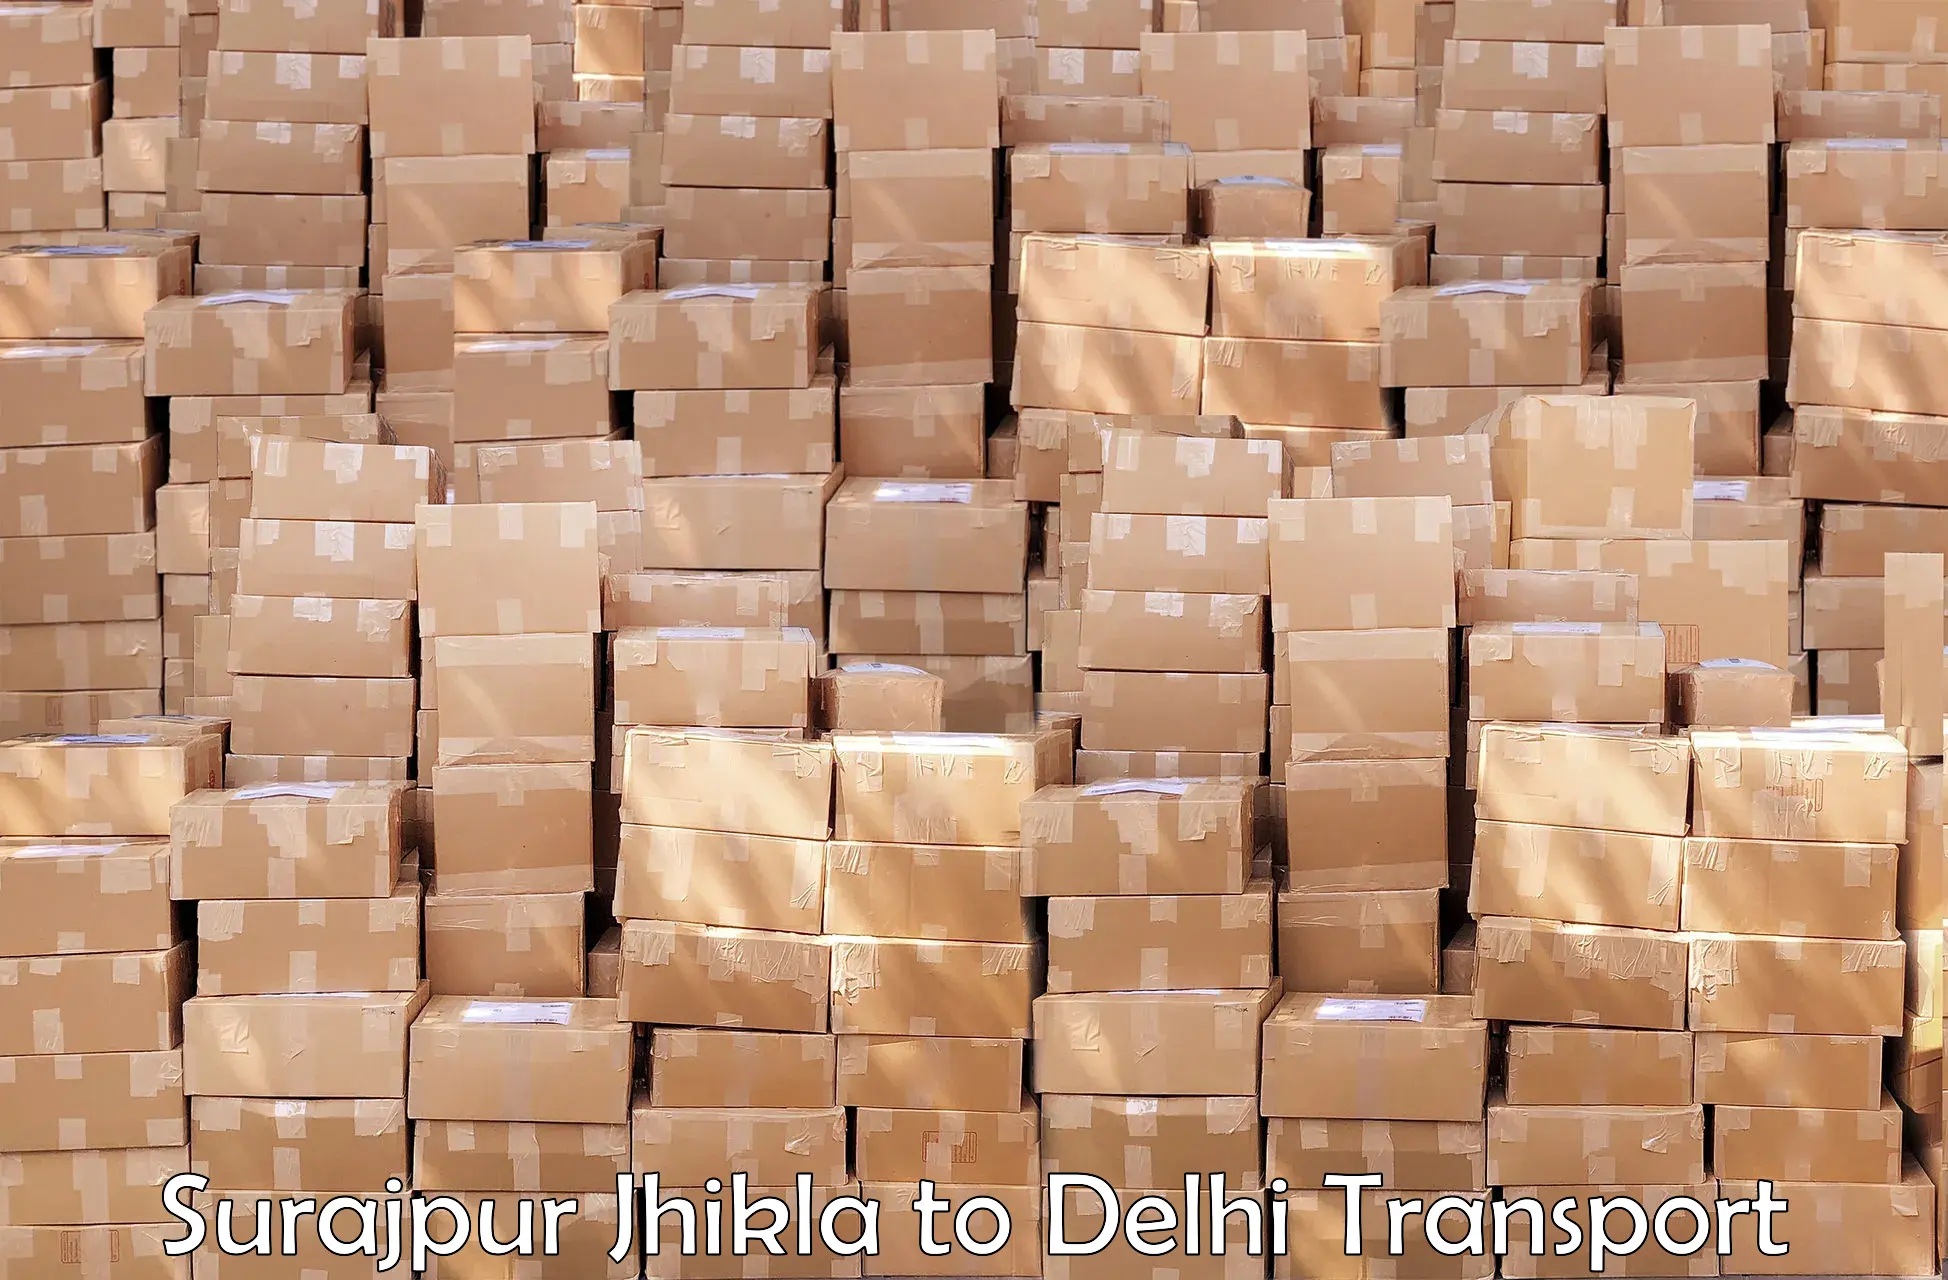 Vehicle courier services Surajpur Jhikla to Delhi